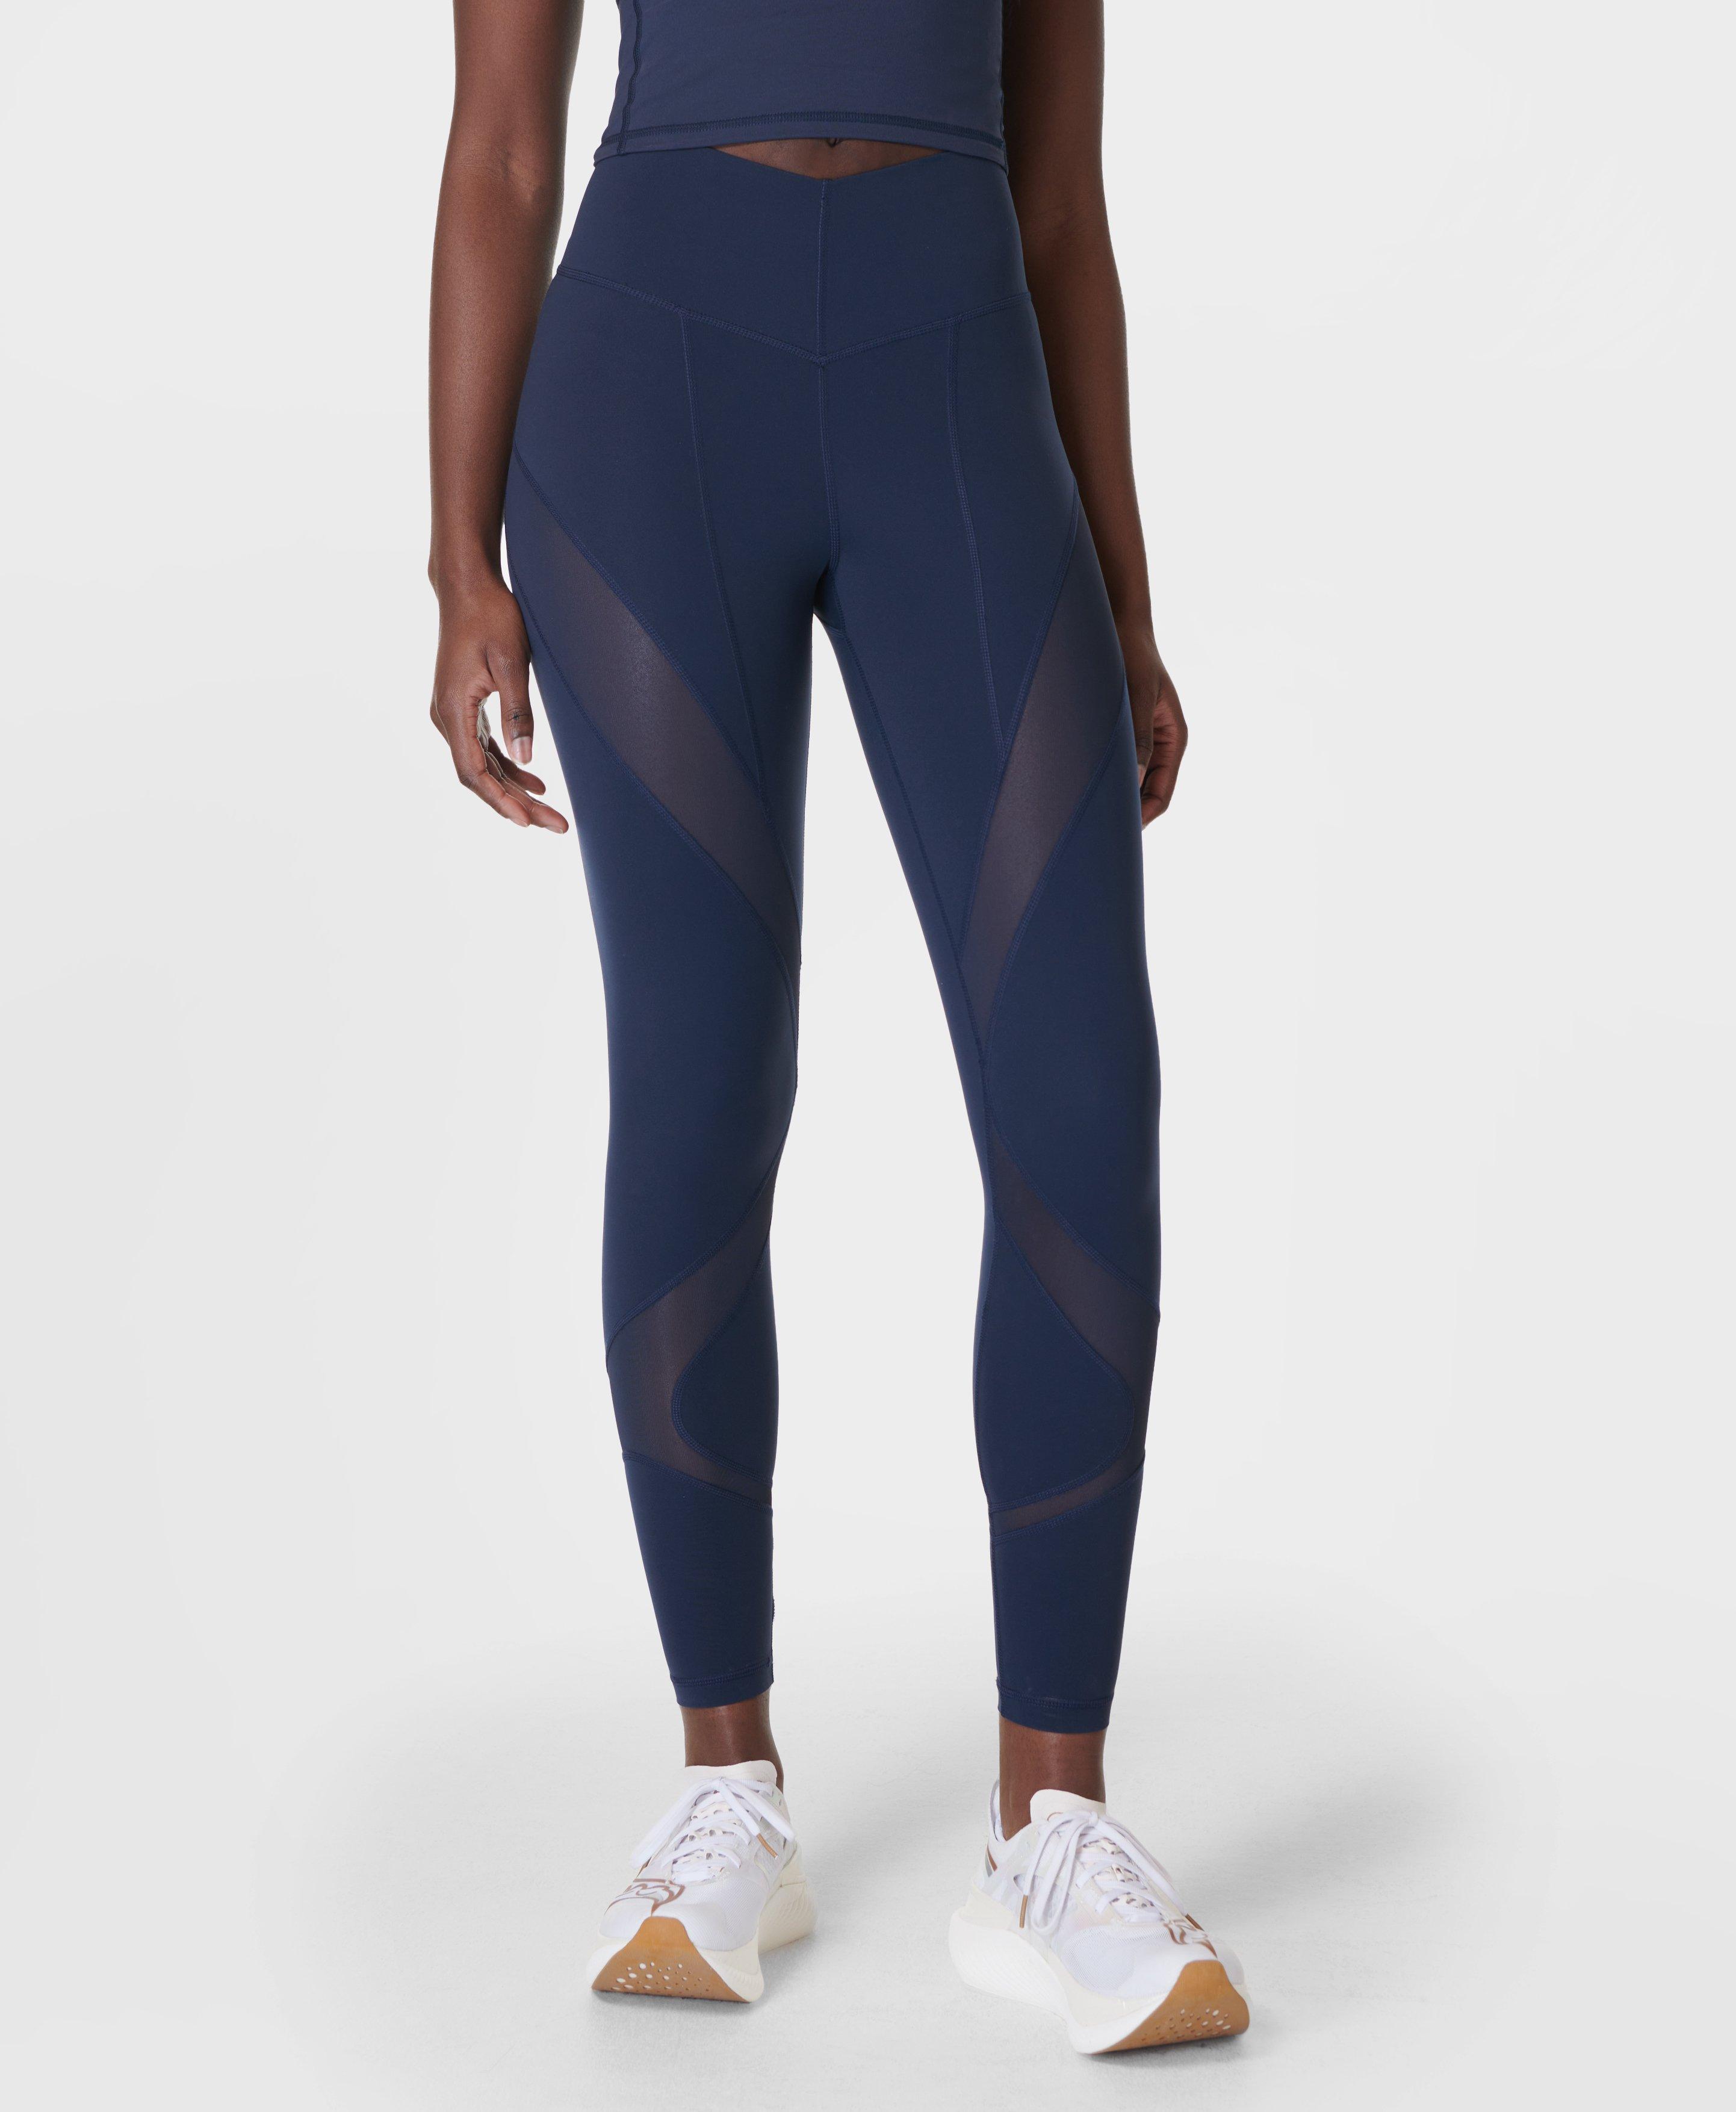 Jennifer Wrynne - Sweaty Betty leggings sale - Up to 50%